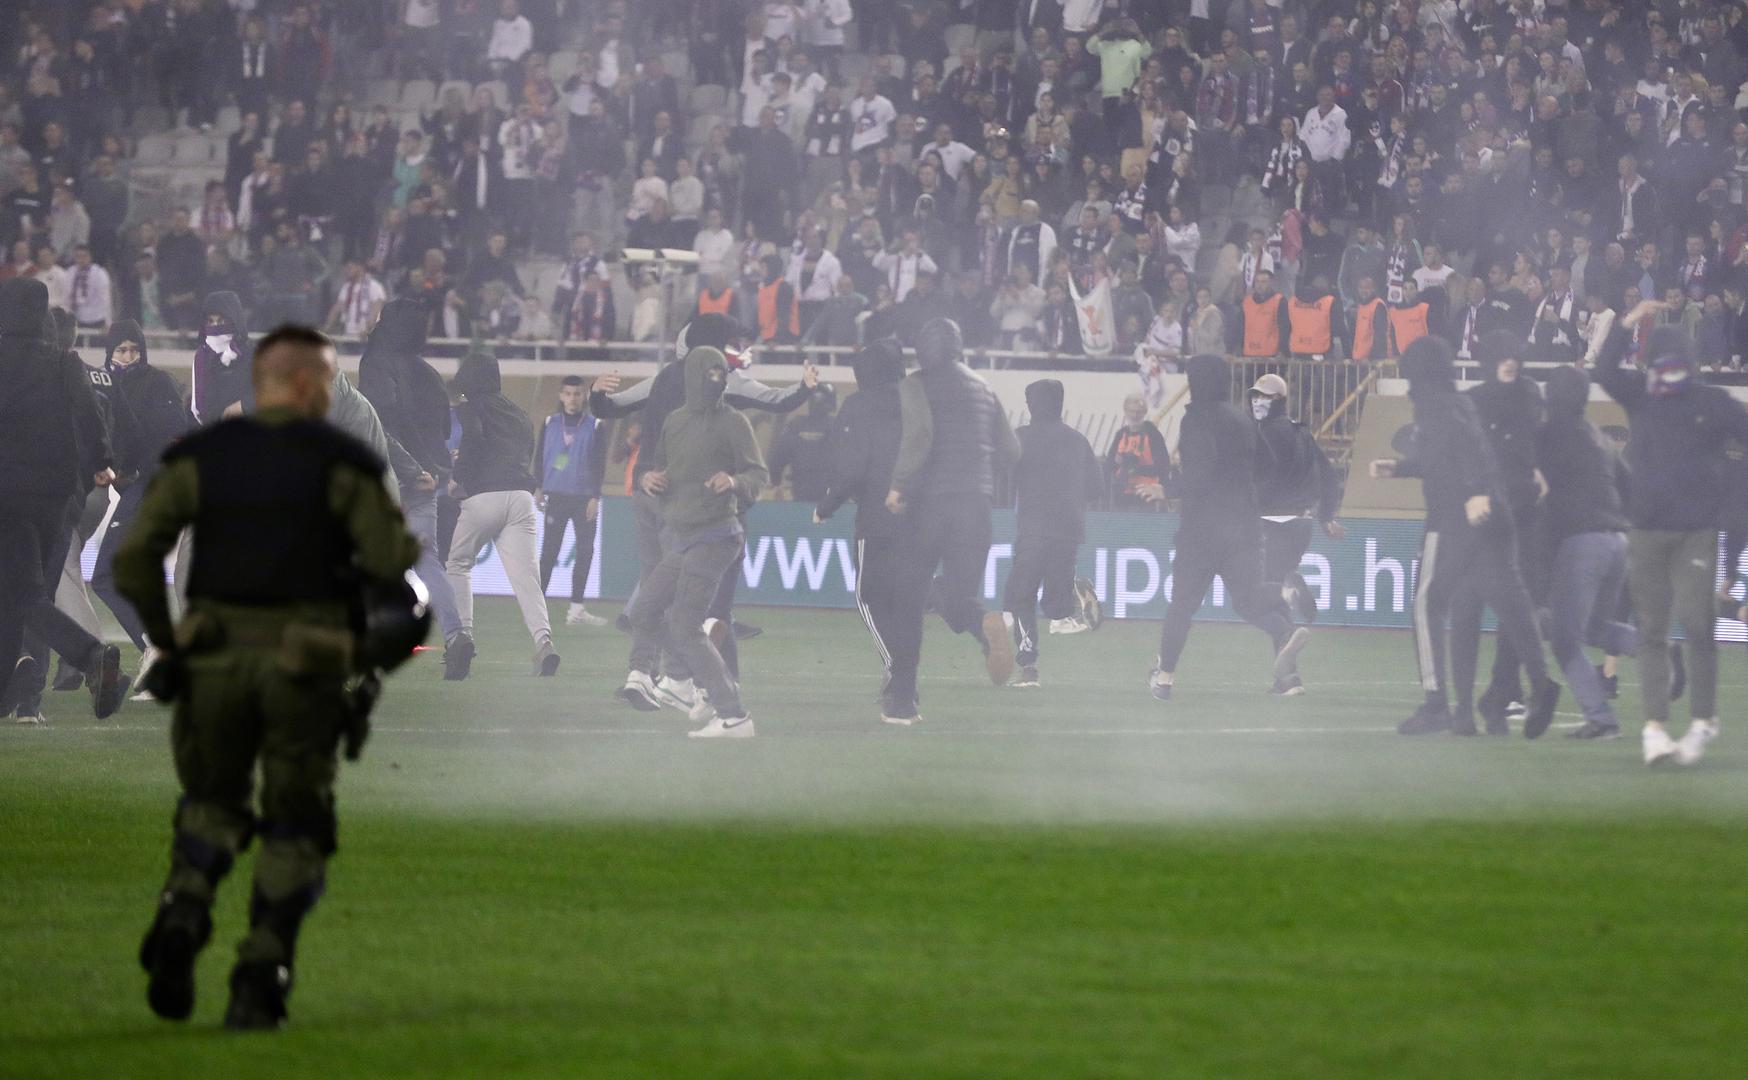 Međutim, nakon toga su navijači Hajduka gađali policajce sjedalicama.